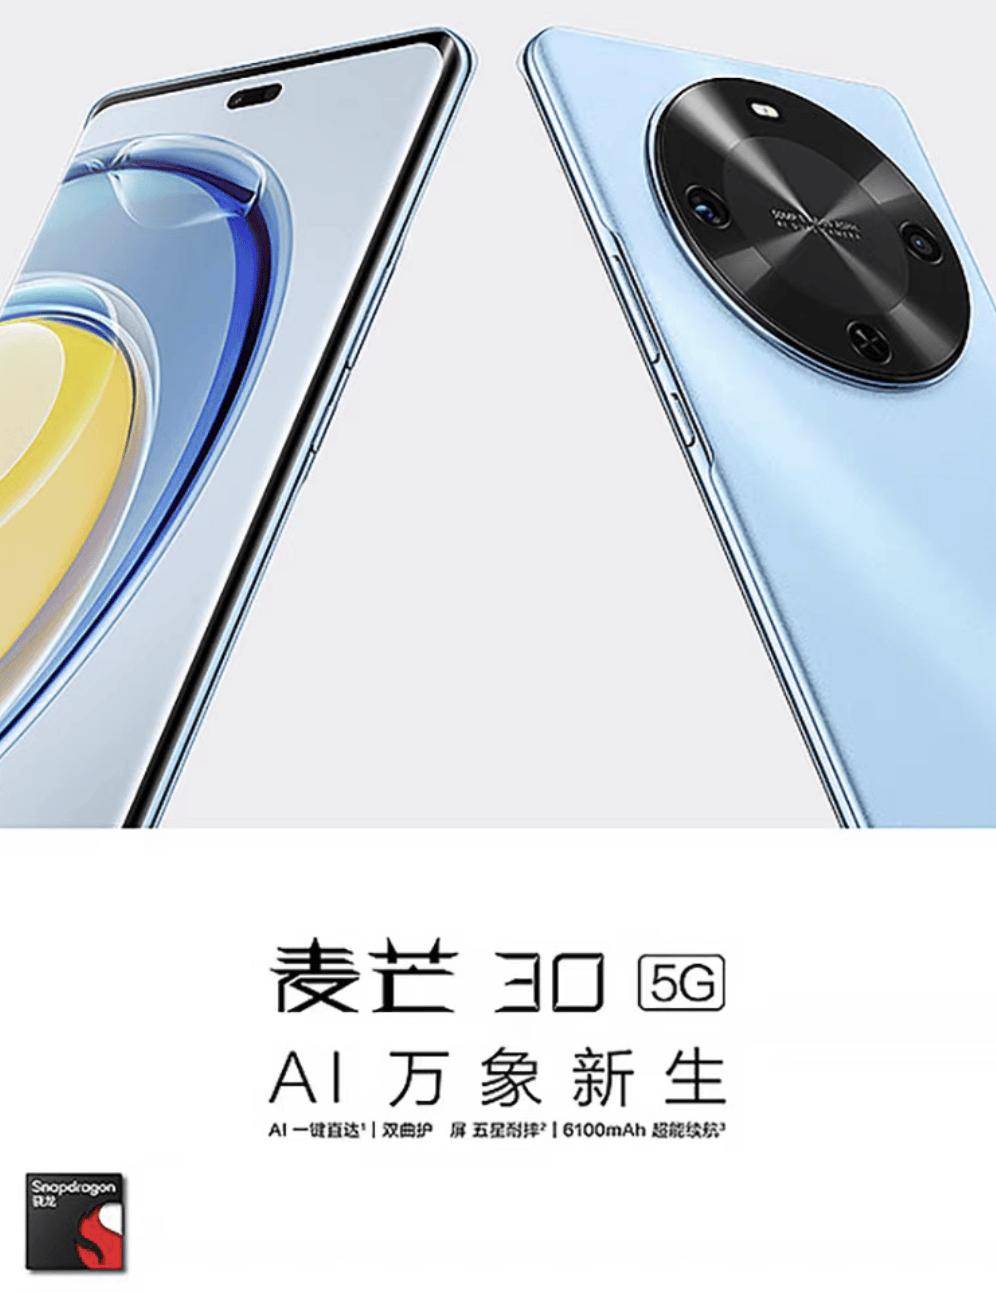 中国电信麦芒30手机首销 主打轻薄设计+大电池